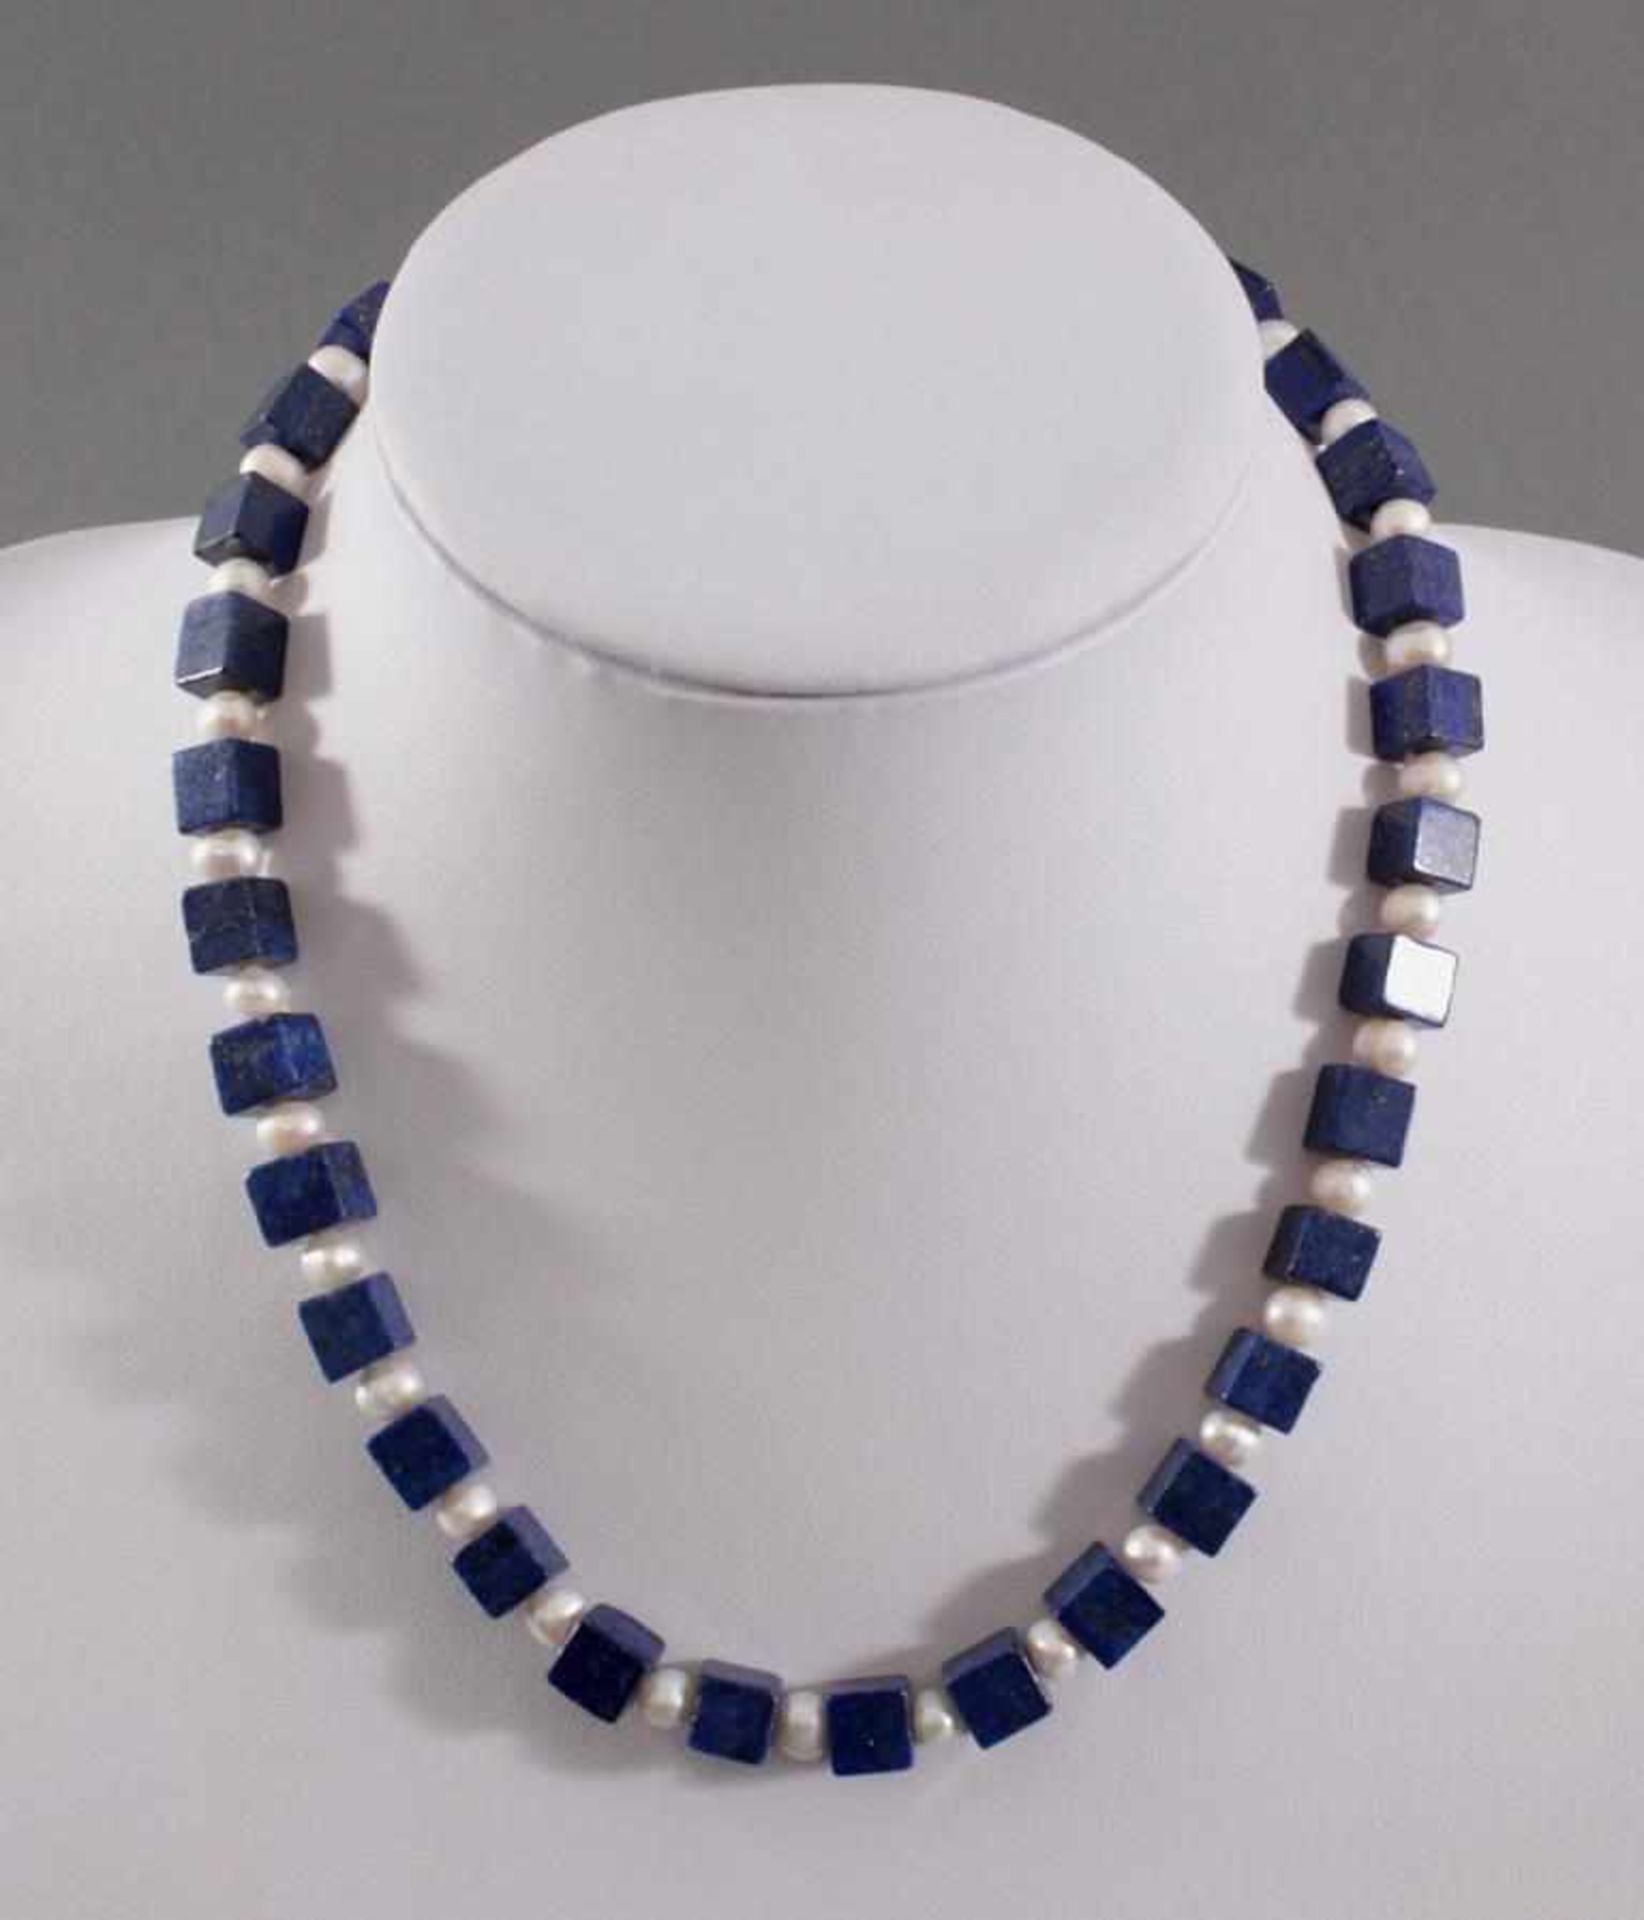 Halskette mit Lapislazuli-Steinen und Frischwasser-PerlenKarabiner-Verschluss aus Sterling Silber,